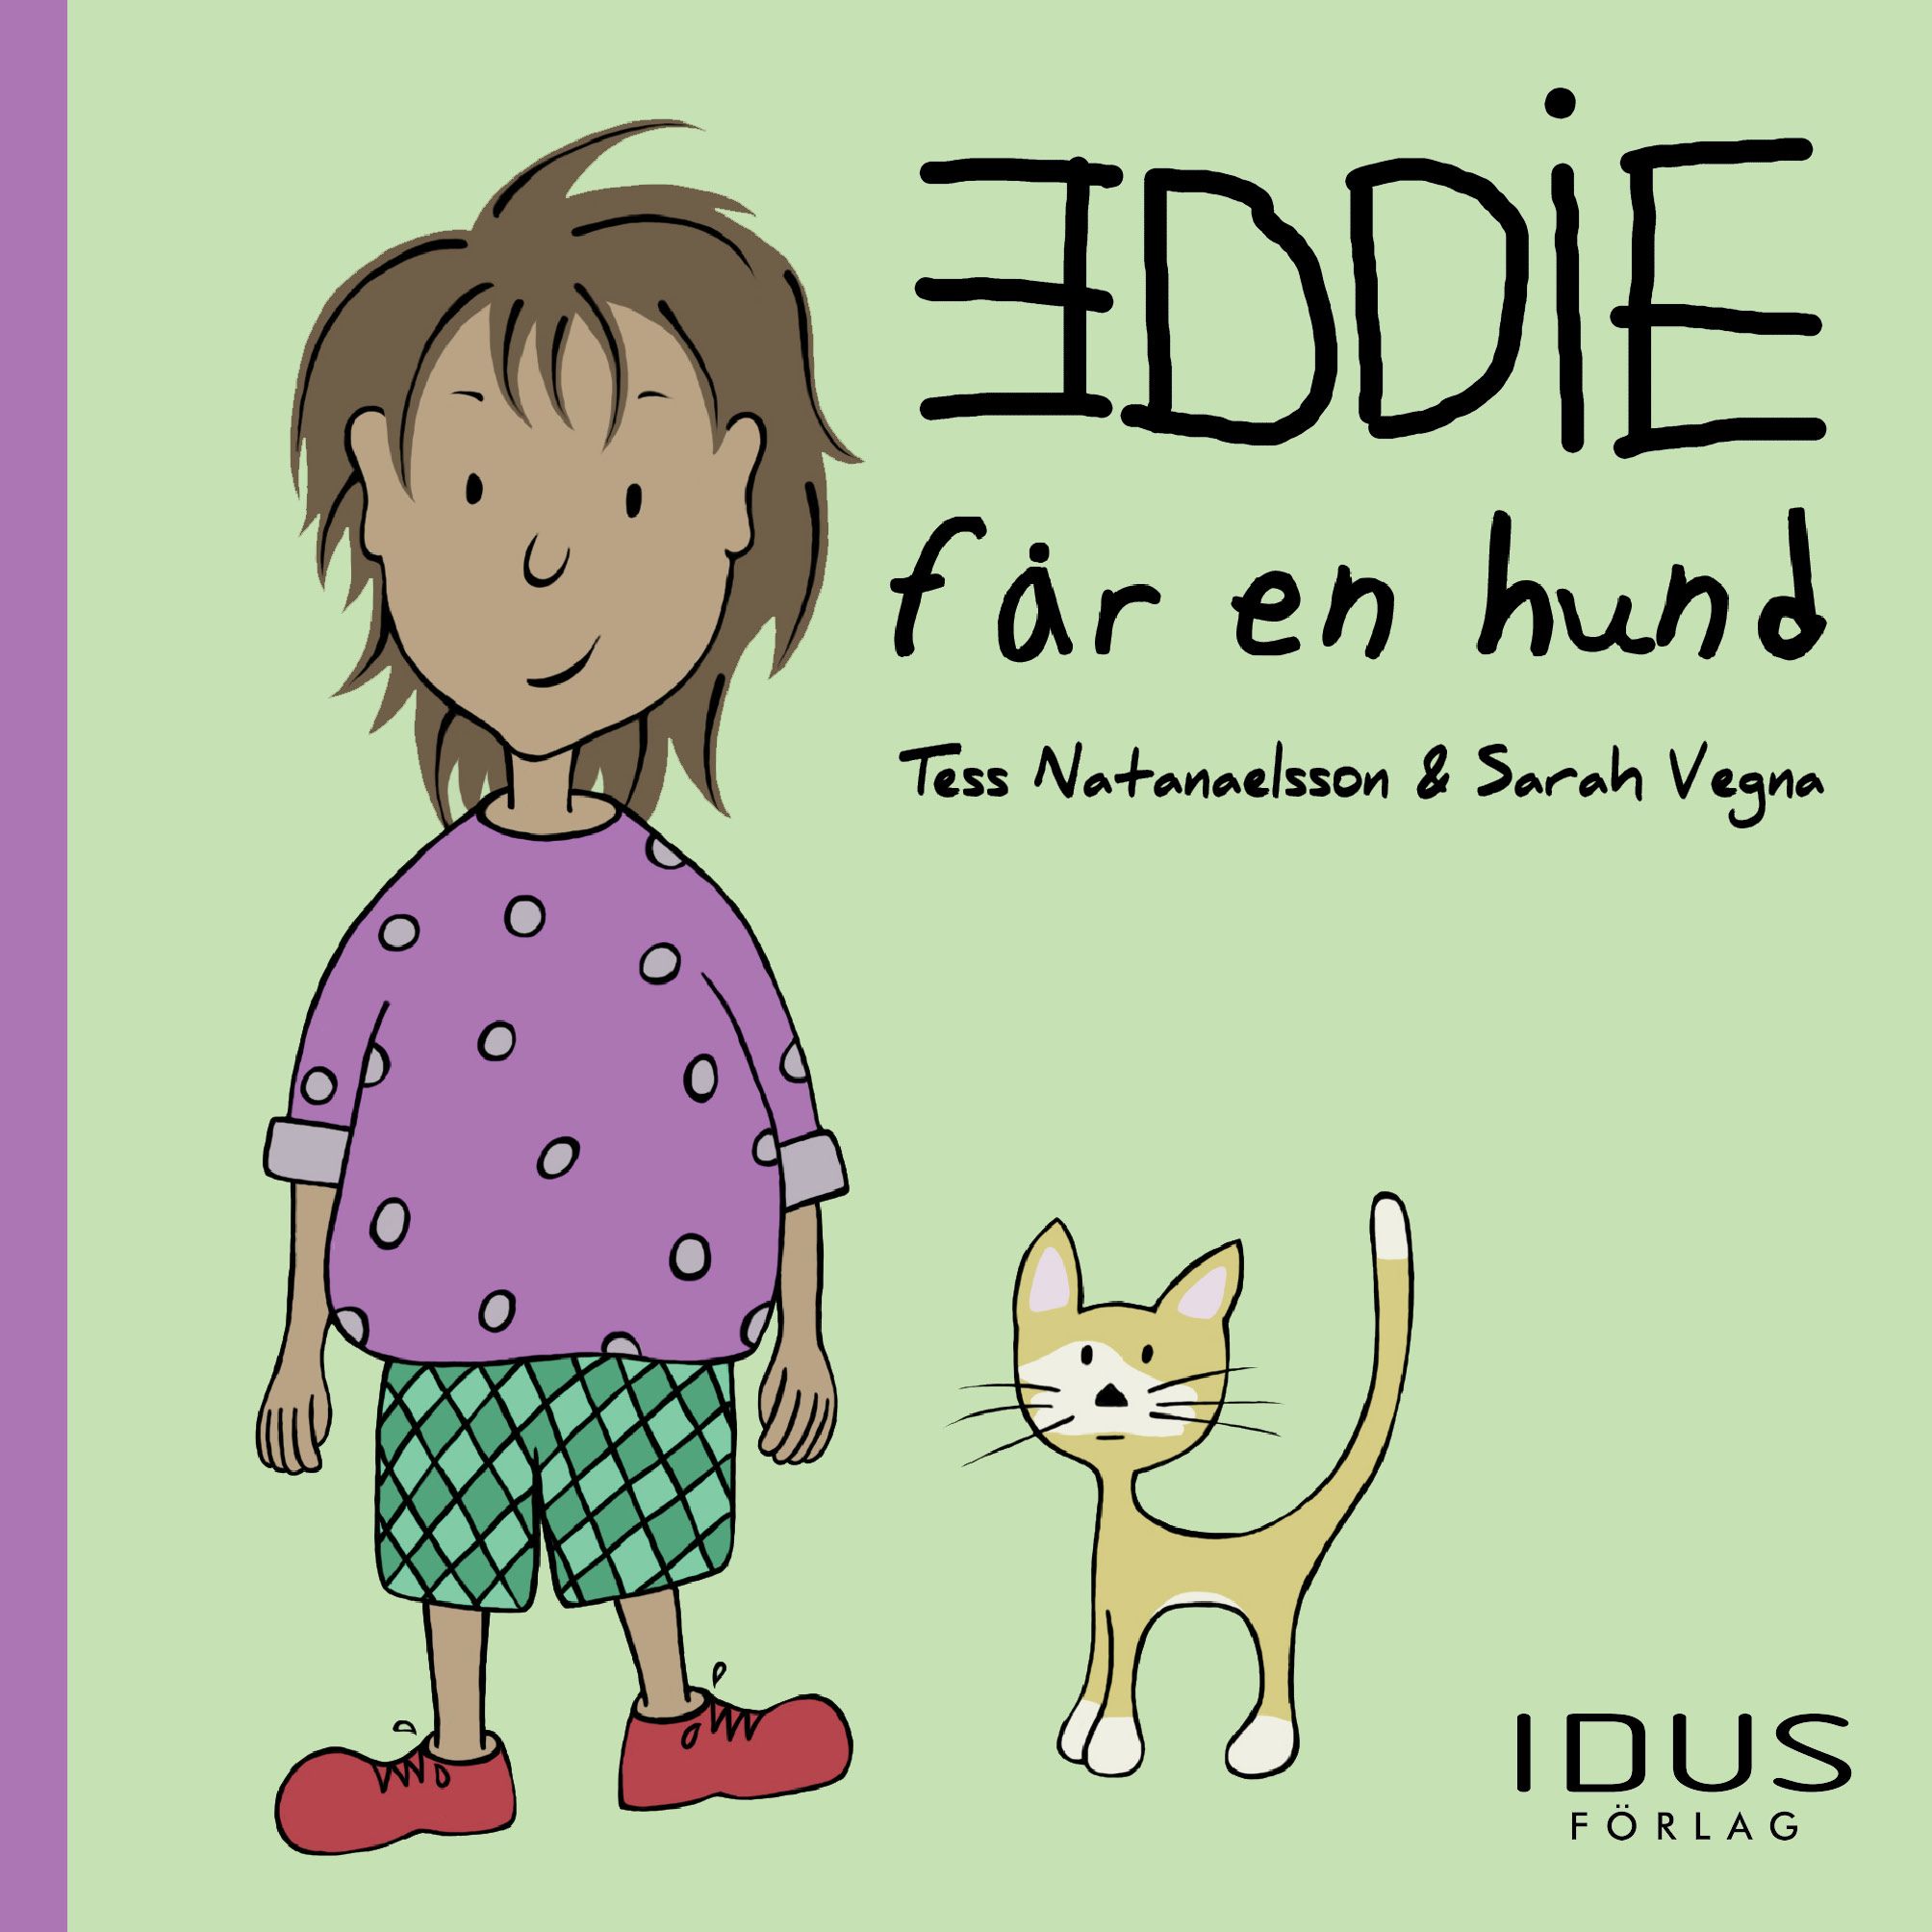 Eddie får en hund, e-bok av Tess Natanaelsson, Sarah Vegna